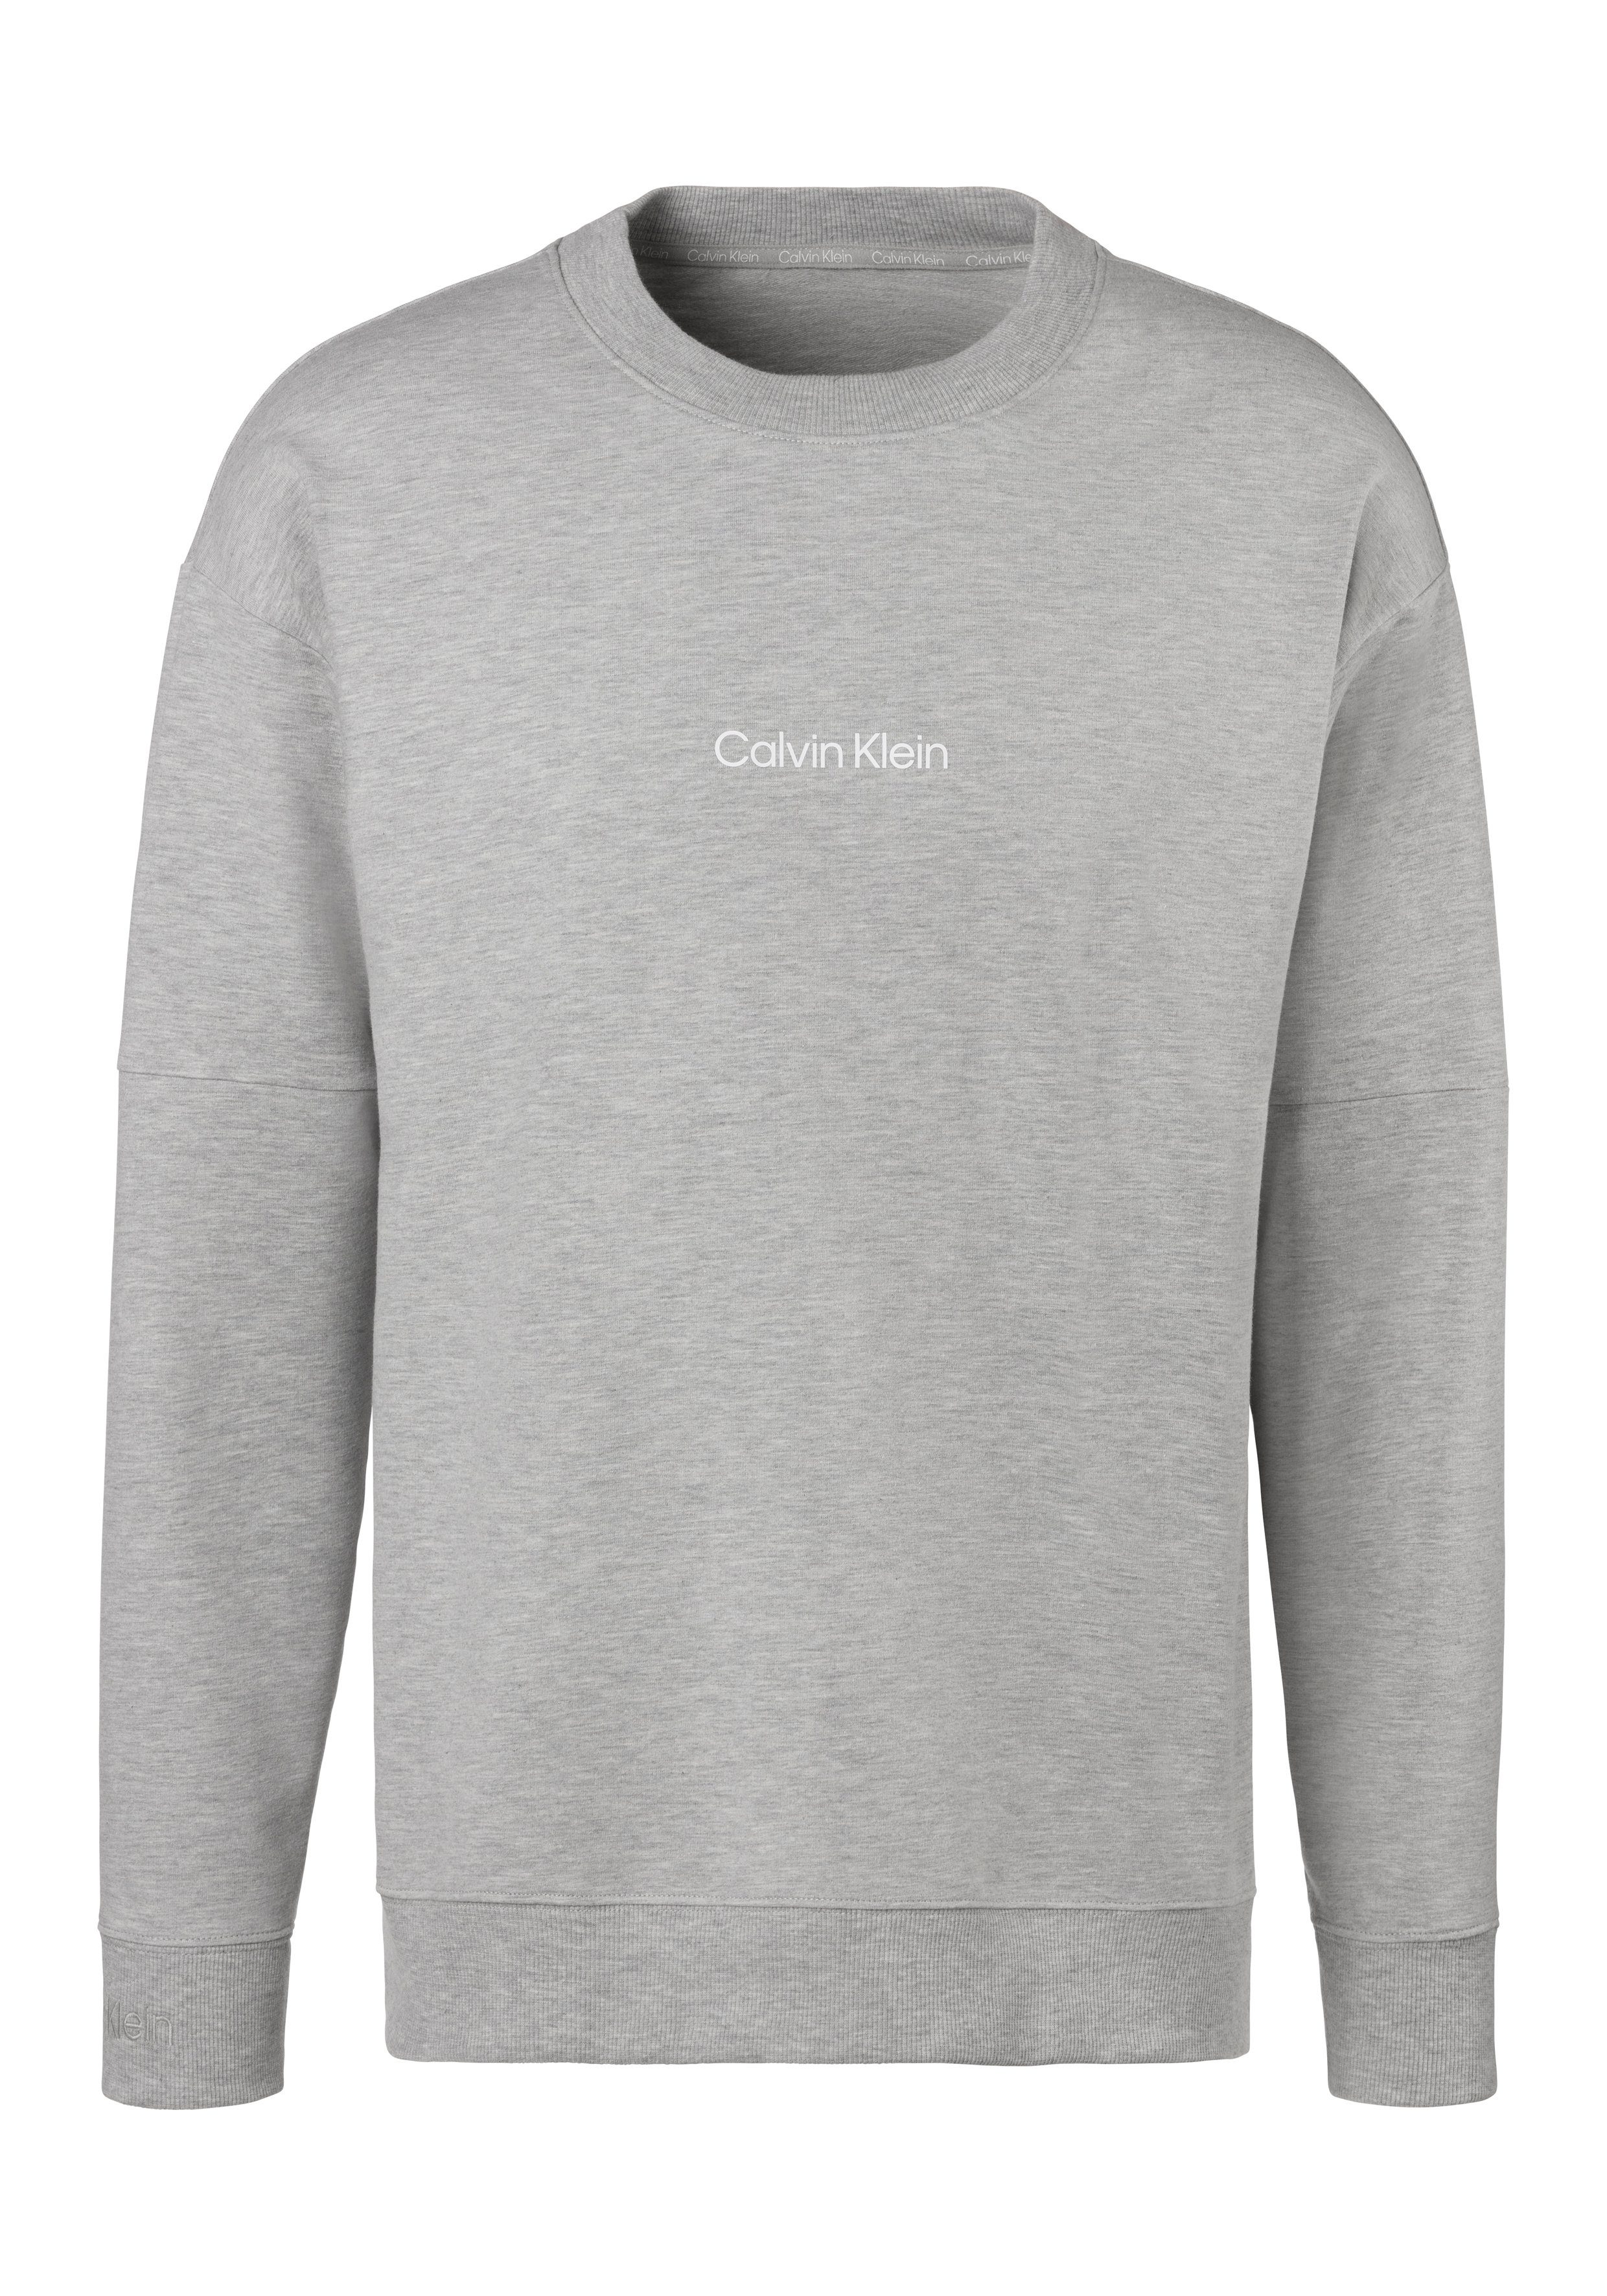 Calvin Klein Underwear Sweatshirt mit Logodruck vorn grau-meliert